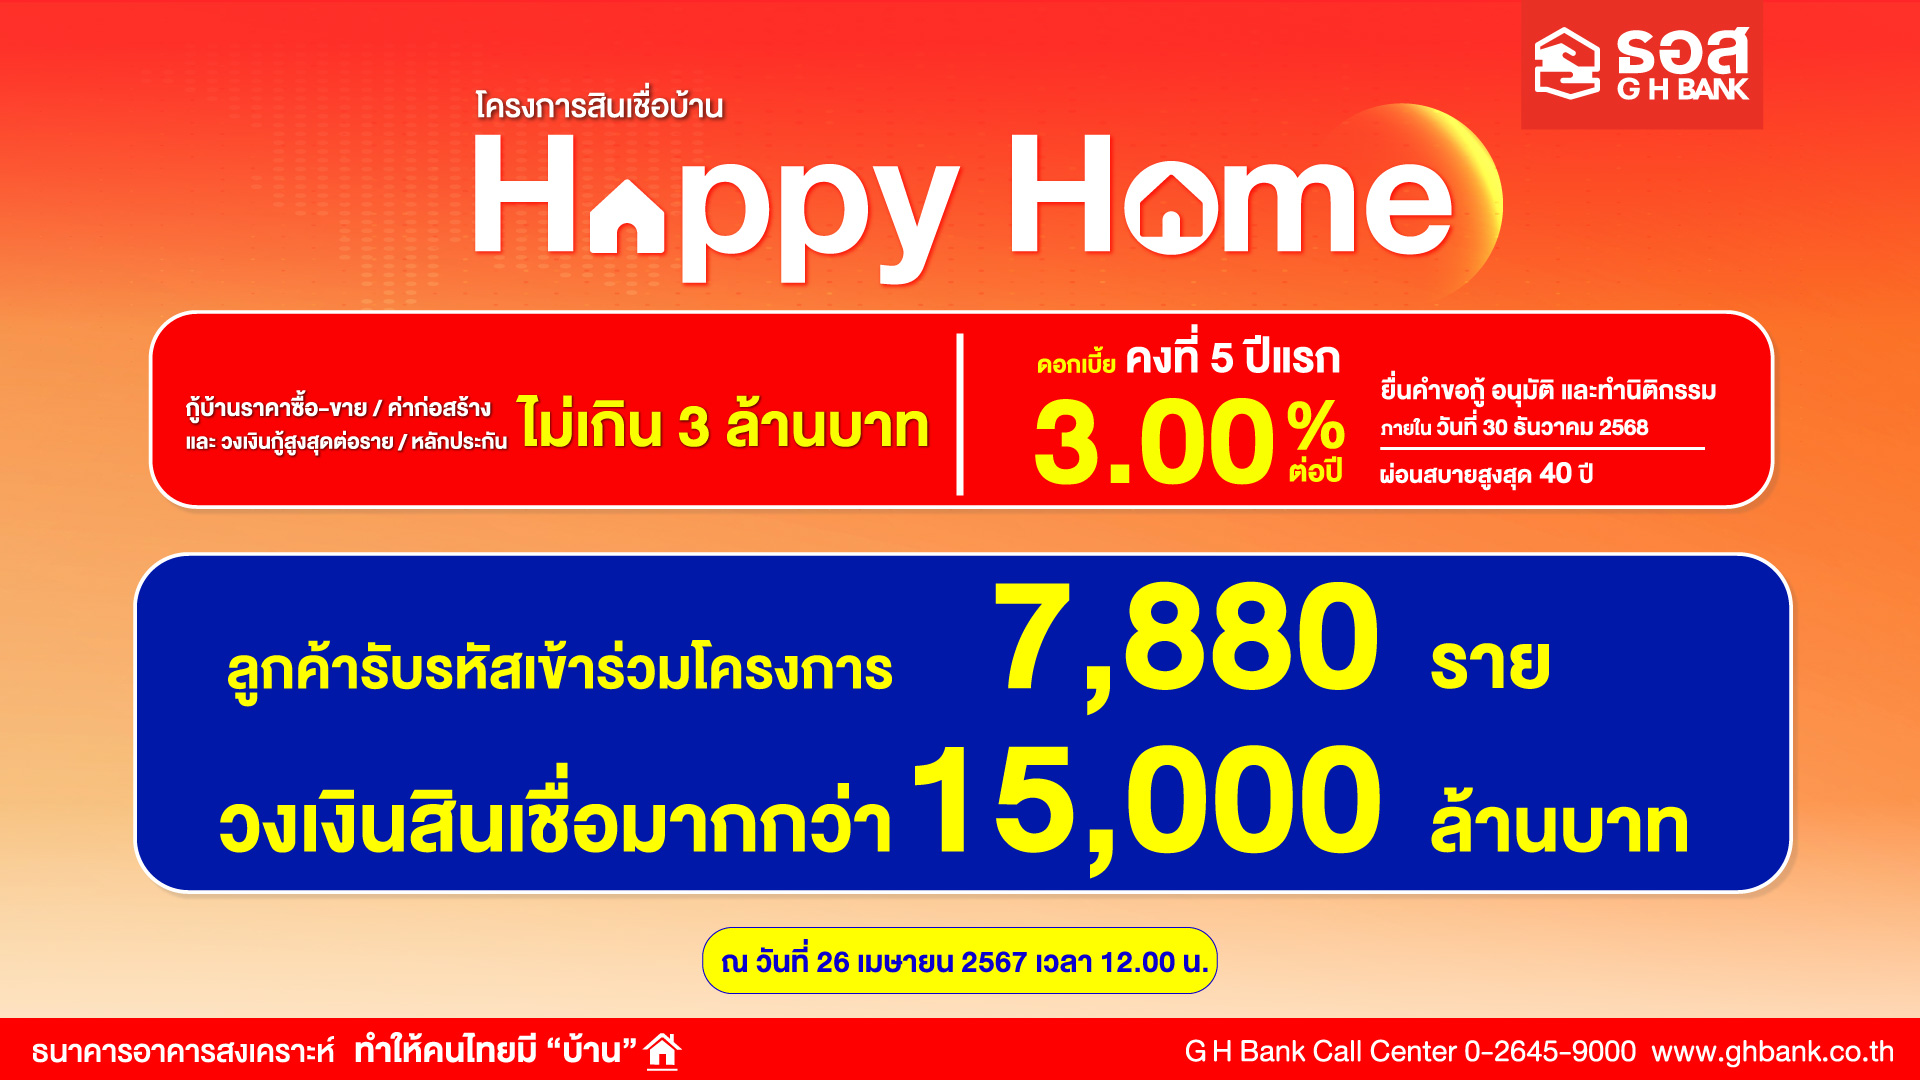 กระแสตอบรับดี!! ลูกค้ารับรหัสเข้าร่วมโครงการสินเชื่อบ้าน Happy Home7,880 ราย คิดเป็นวงเงินสินเชื่อมากกว่า 15,000 ล้านบาท